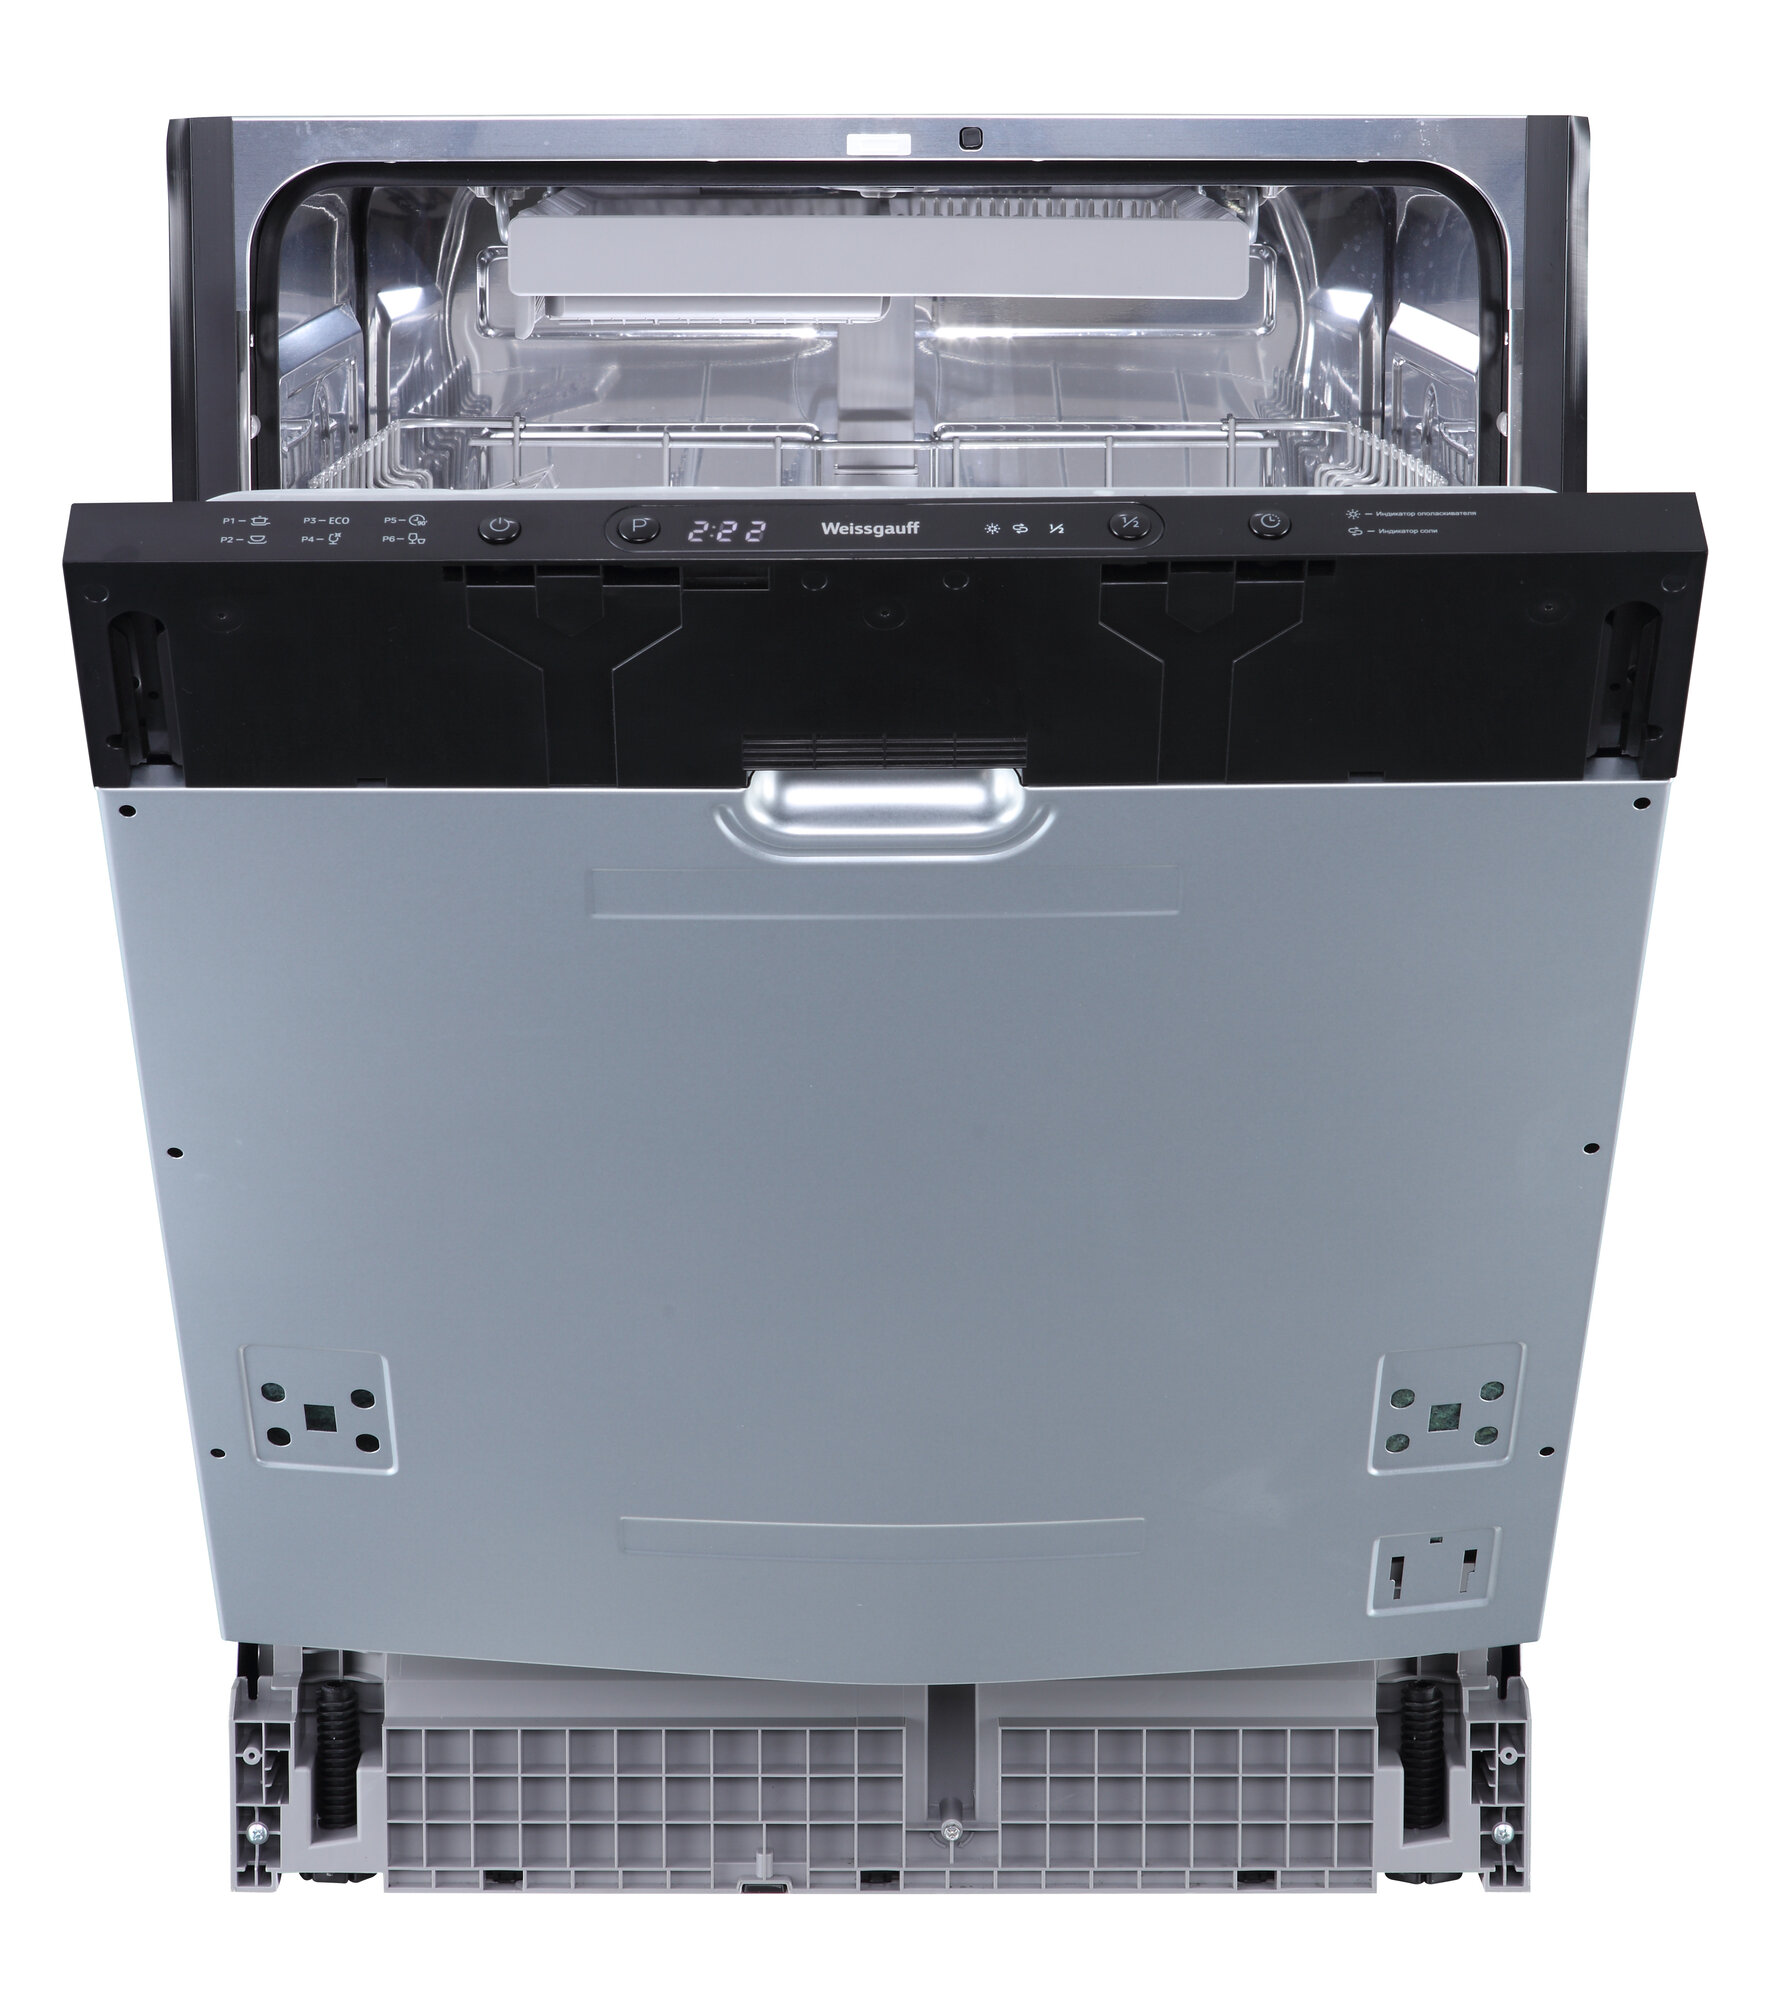 Встраиваемая посудомоечная машина с авто-открываниемWeissgauff BDW 6036 D AutoOpen,3 года гарантии, 14 комплектов посуды, 3 корзины, 6 программ, половинная загрузка, быстрый режим 30 минут, экономичная программа, таймер, электронное управление, дозагрузка